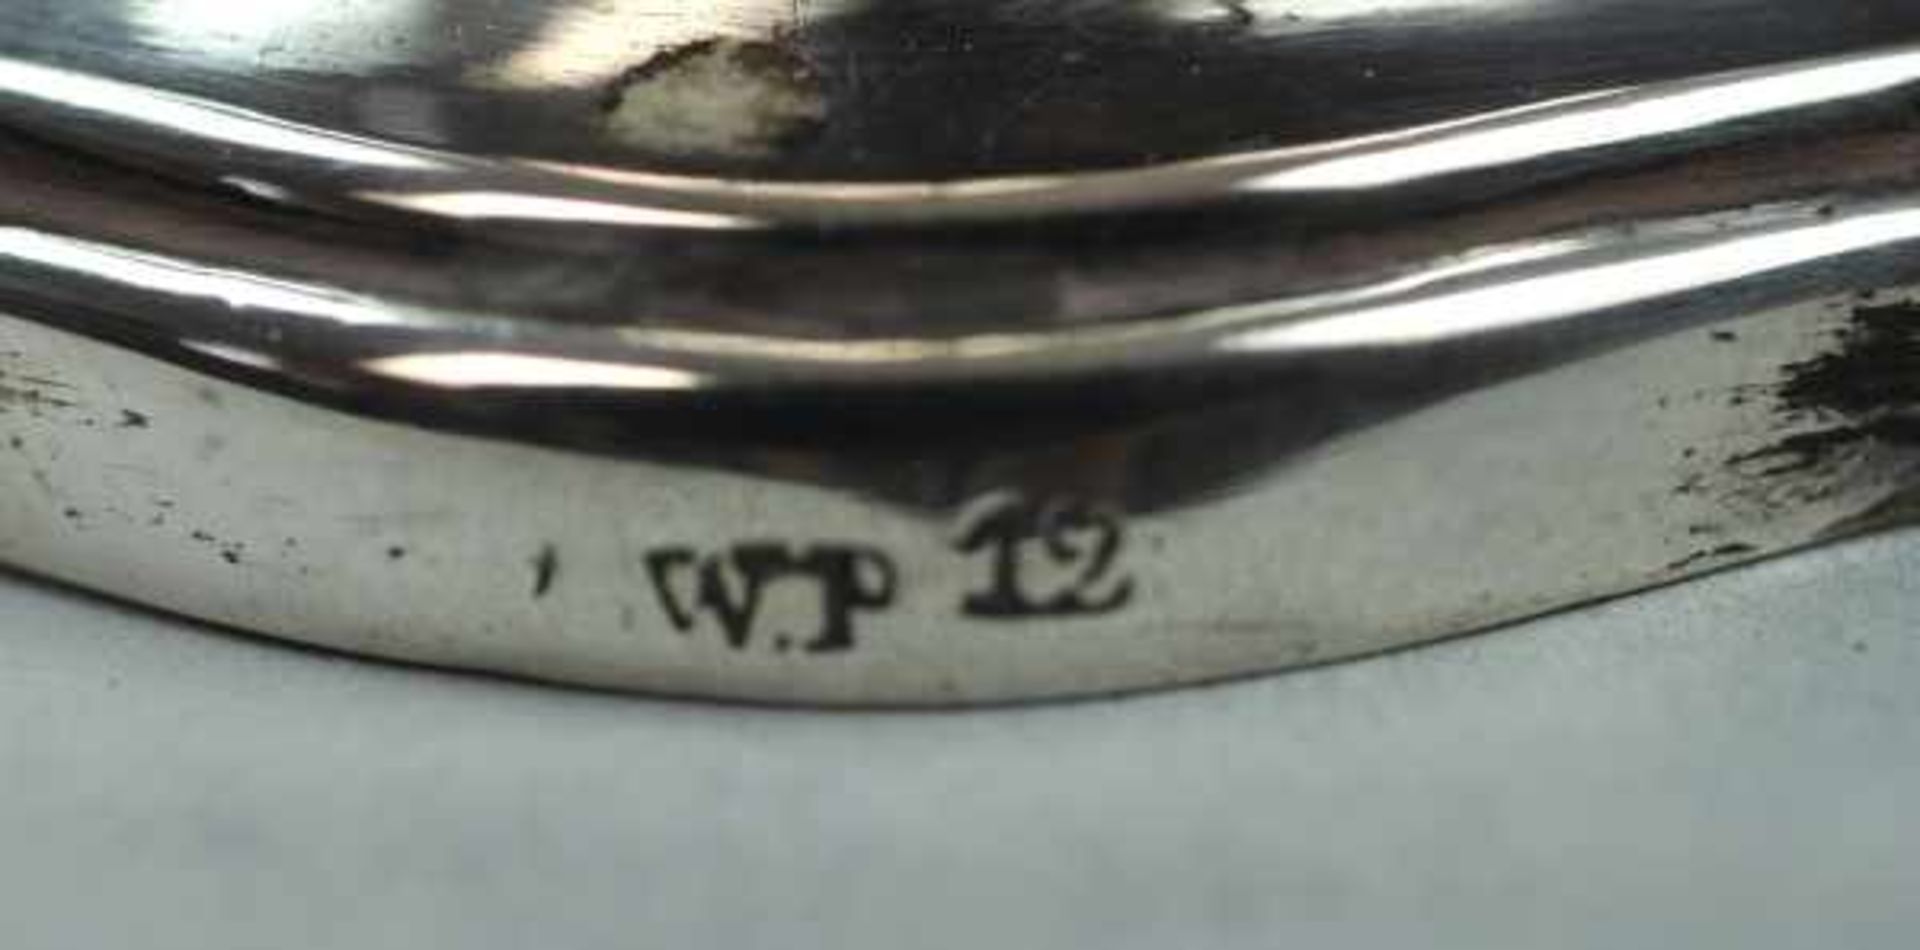 LEUCHTER barocke Form auf mehrpassigem Fuß, gestempelt WP 12 wohl 12 Lot Silber, H 23cm, 683gr ( - Image 2 of 2